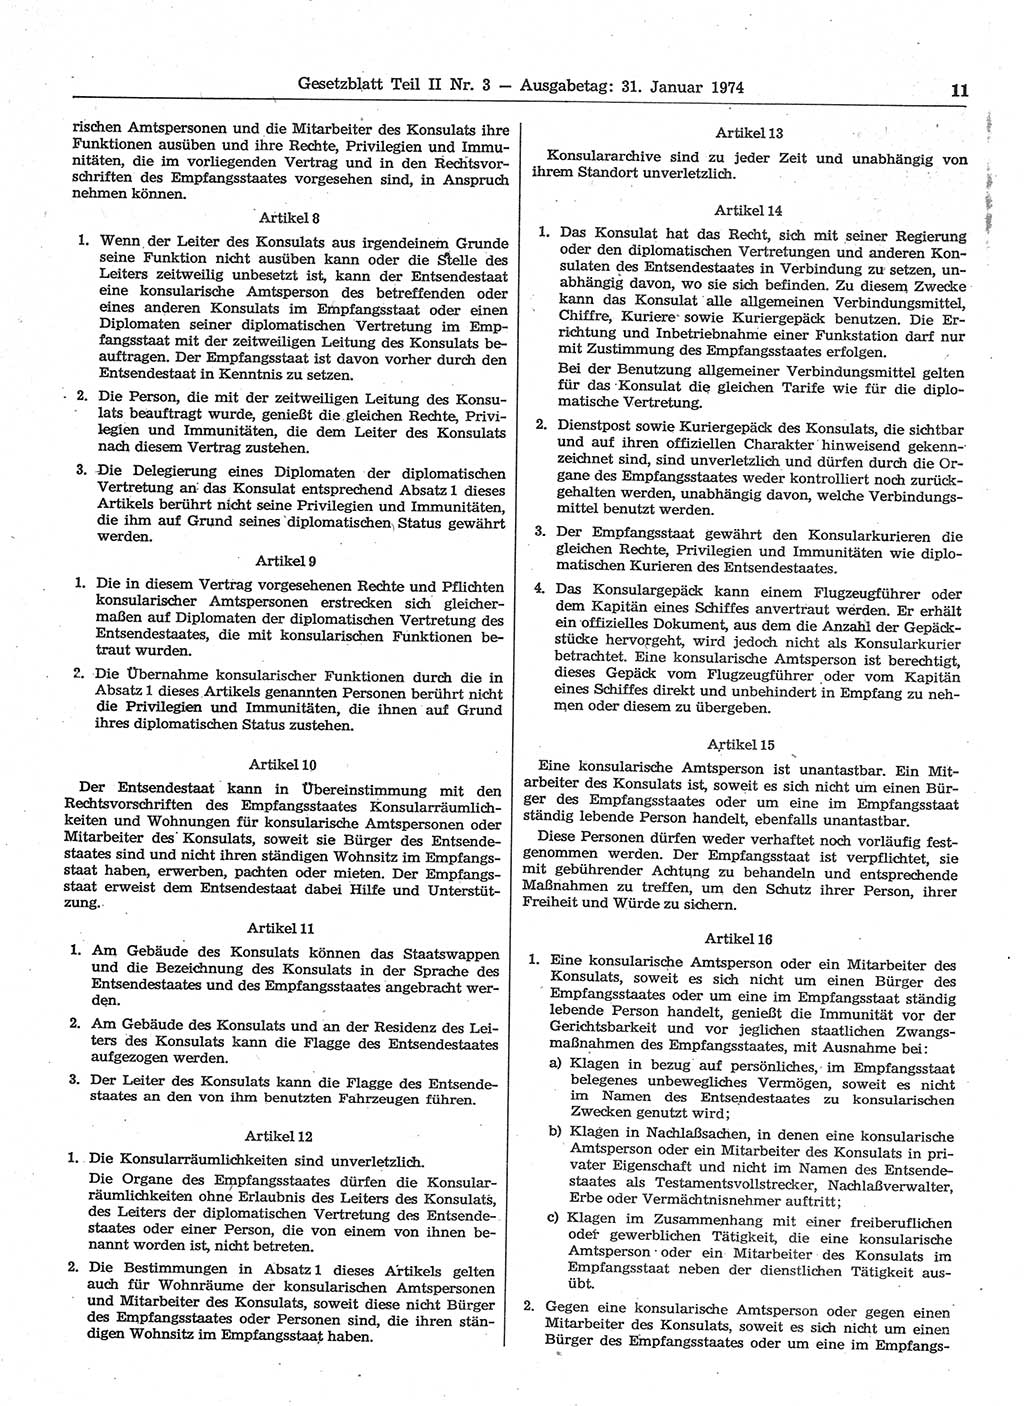 Gesetzblatt (GBl.) der Deutschen Demokratischen Republik (DDR) Teil ⅠⅠ 1974, Seite 11 (GBl. DDR ⅠⅠ 1974, S. 11)